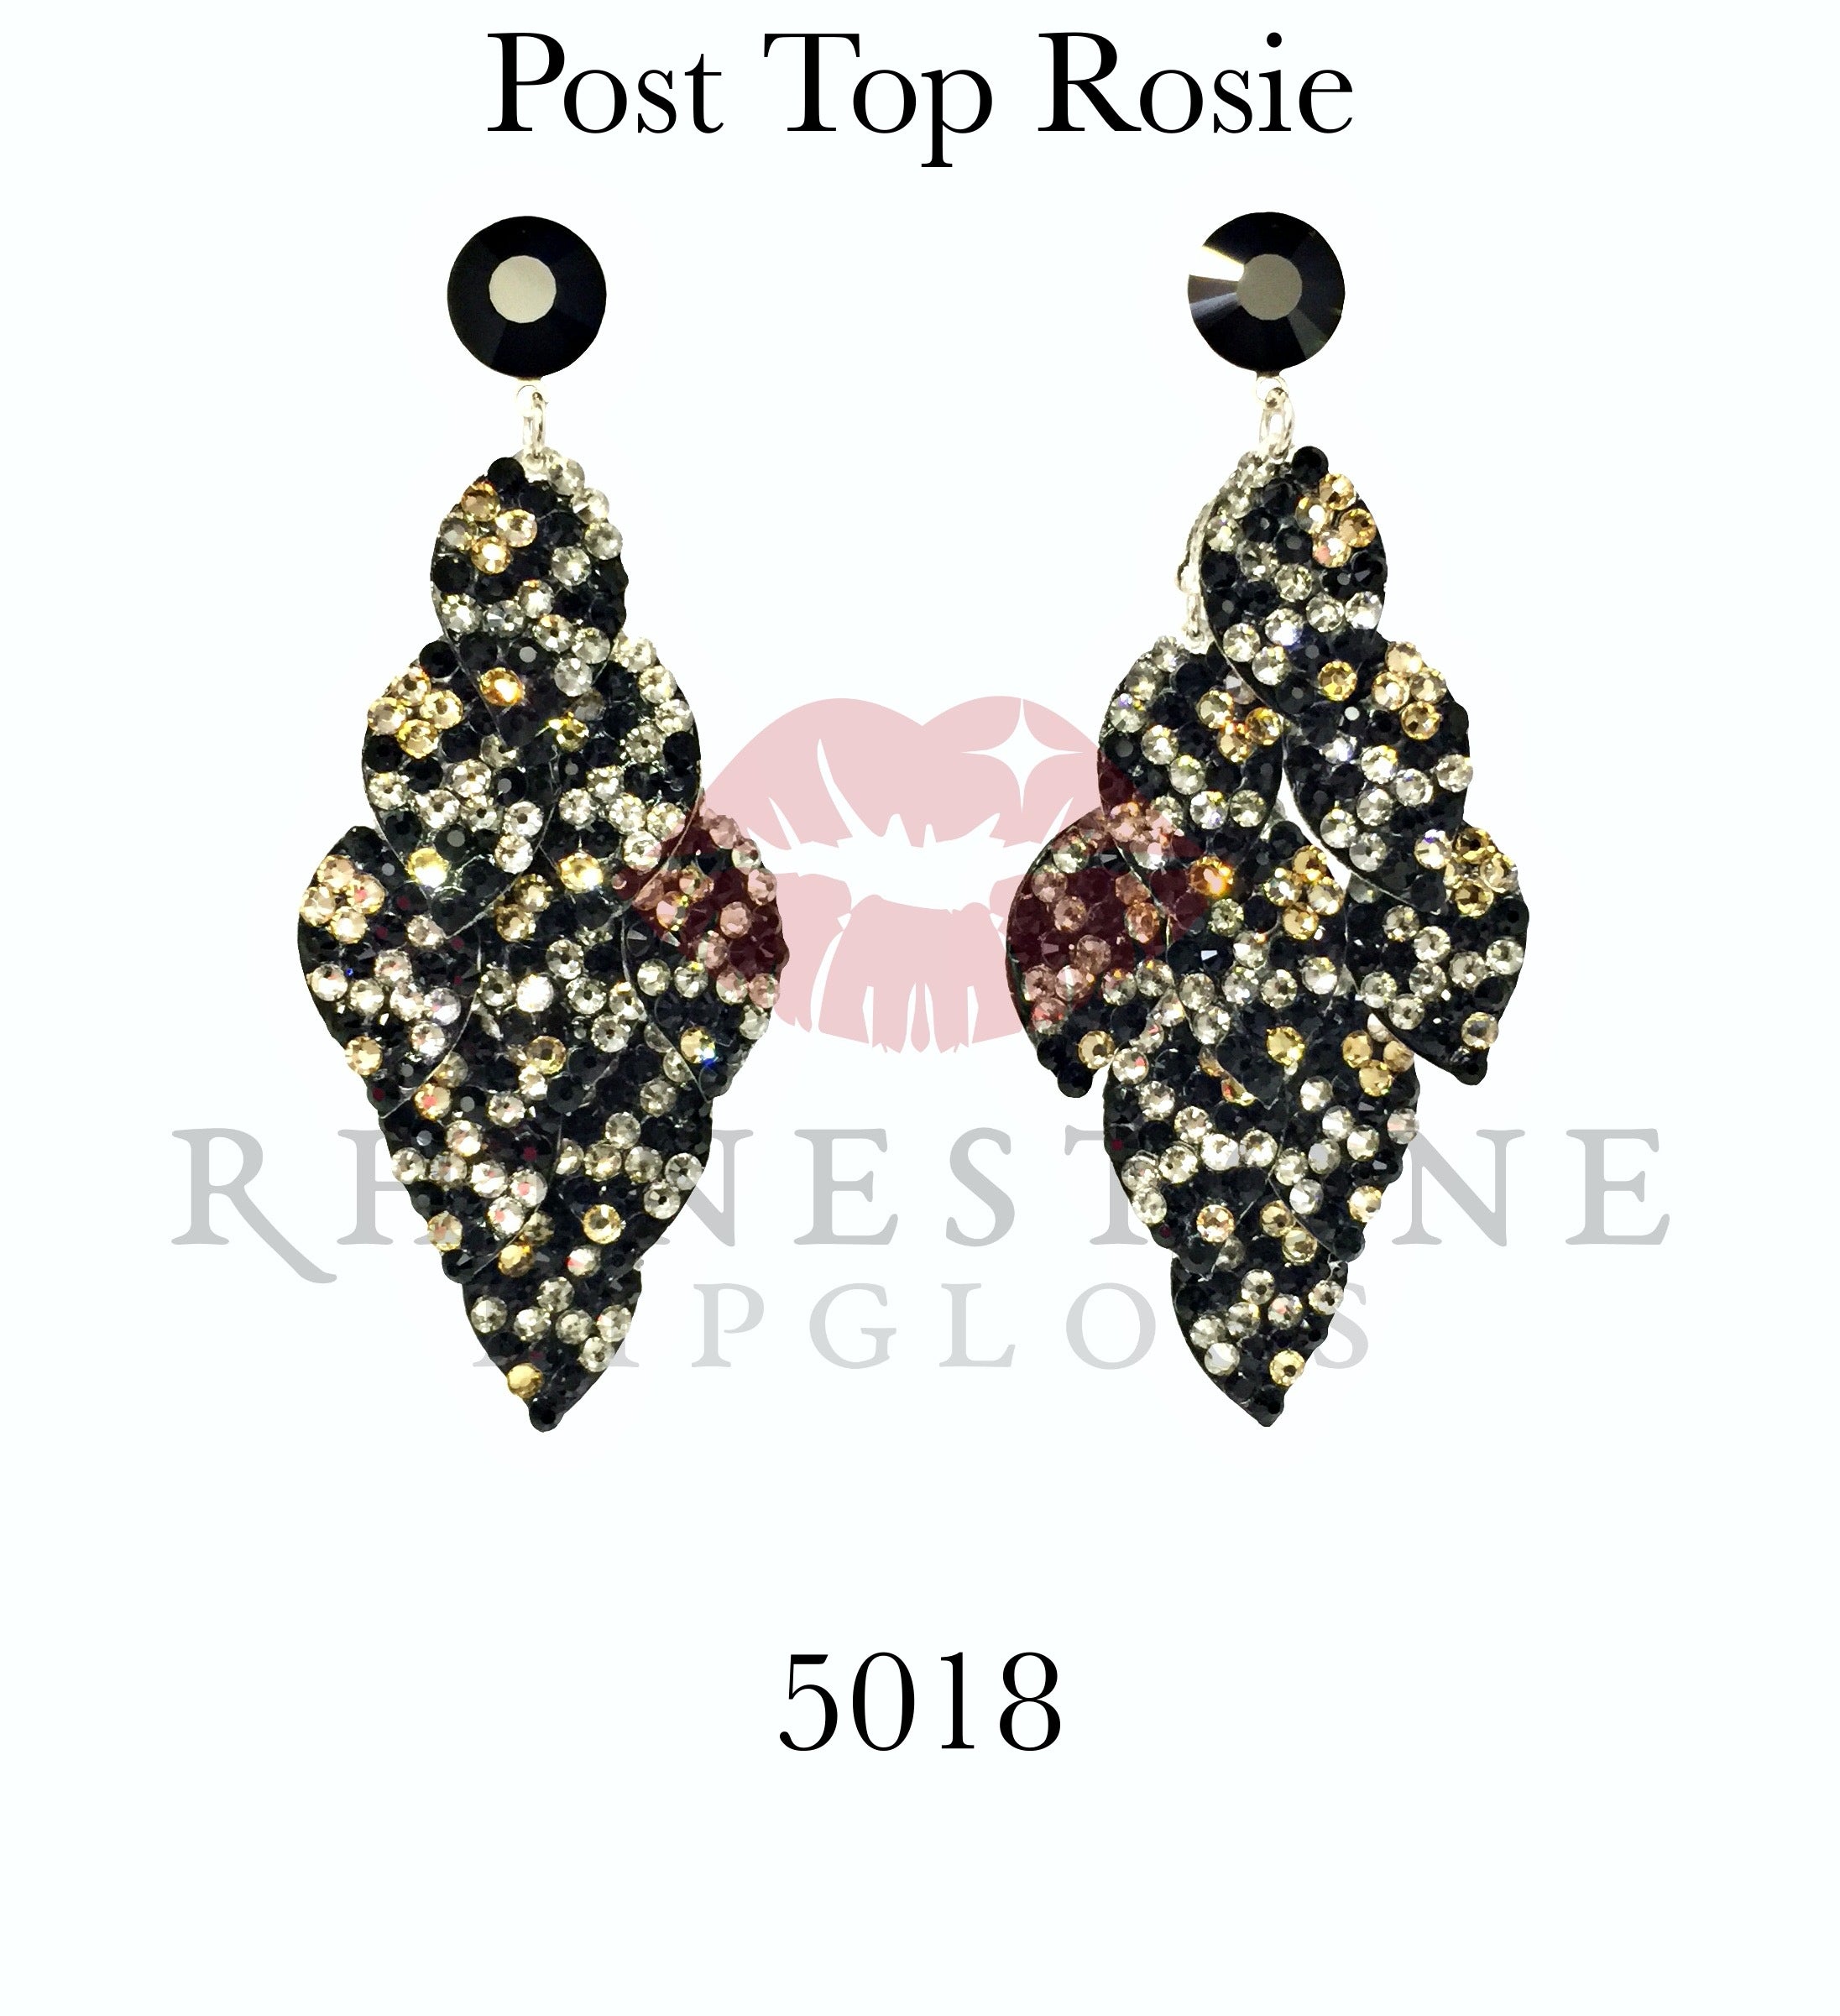 Post Top Rosie 5018